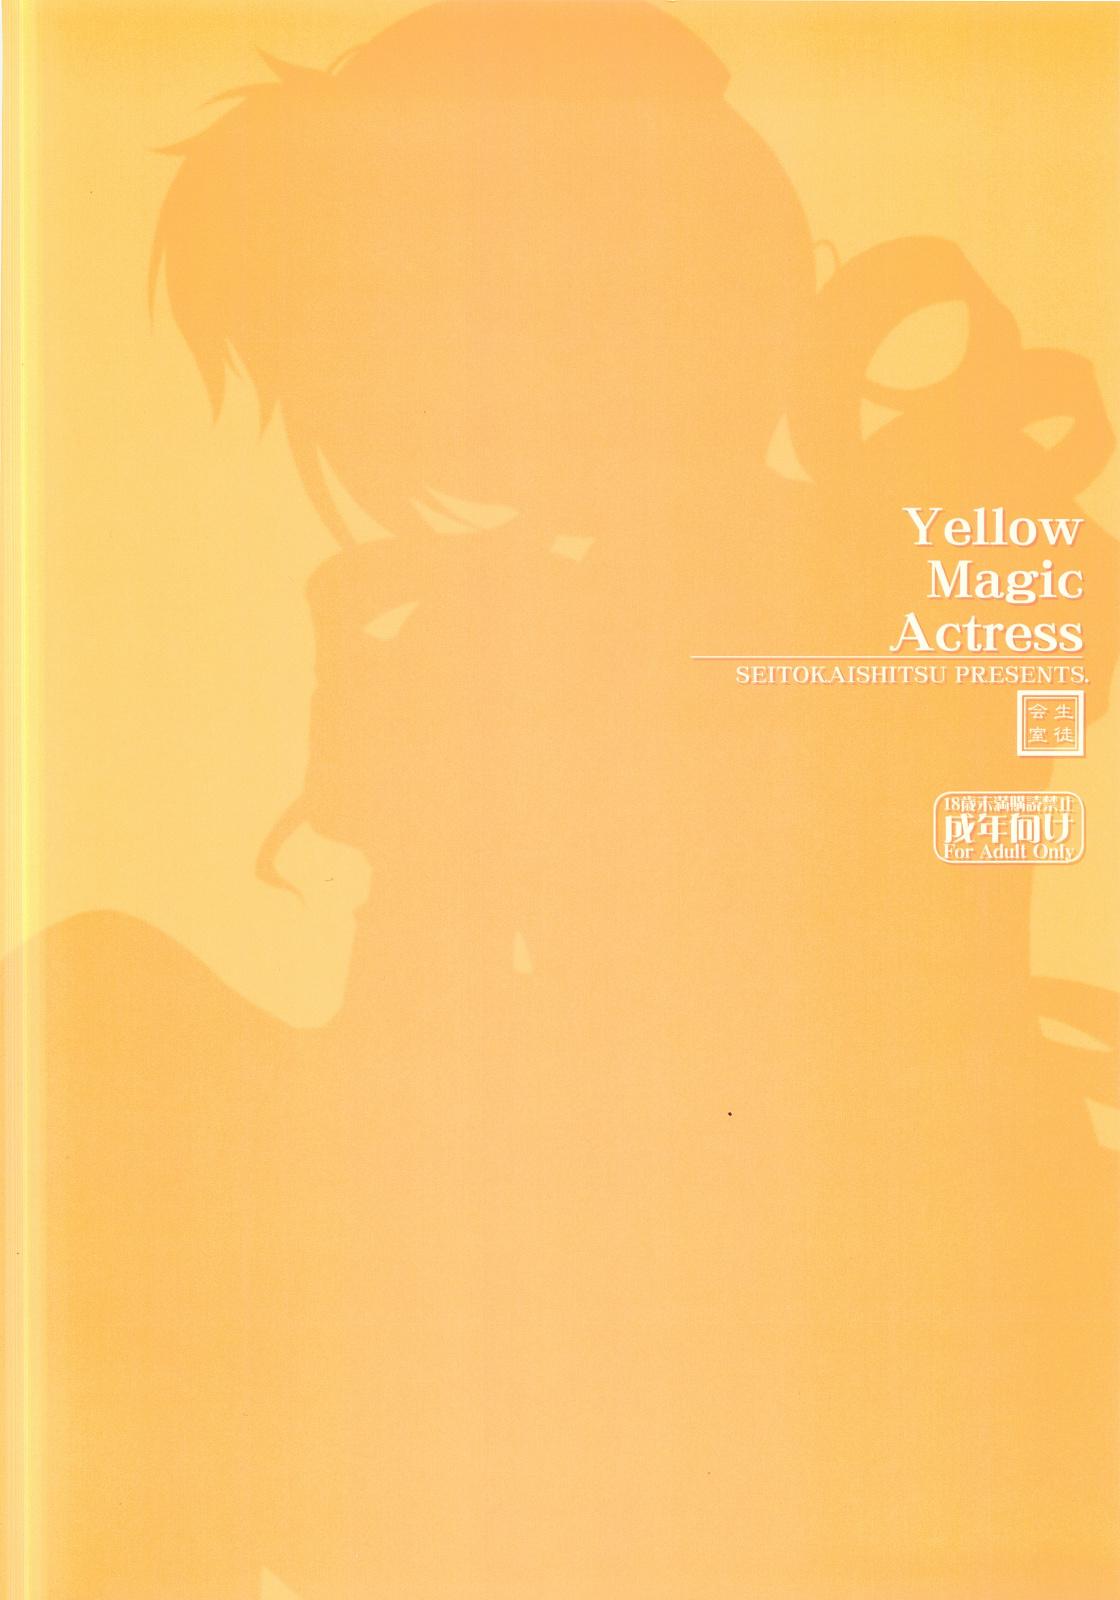 Yellow Magic Actress 18